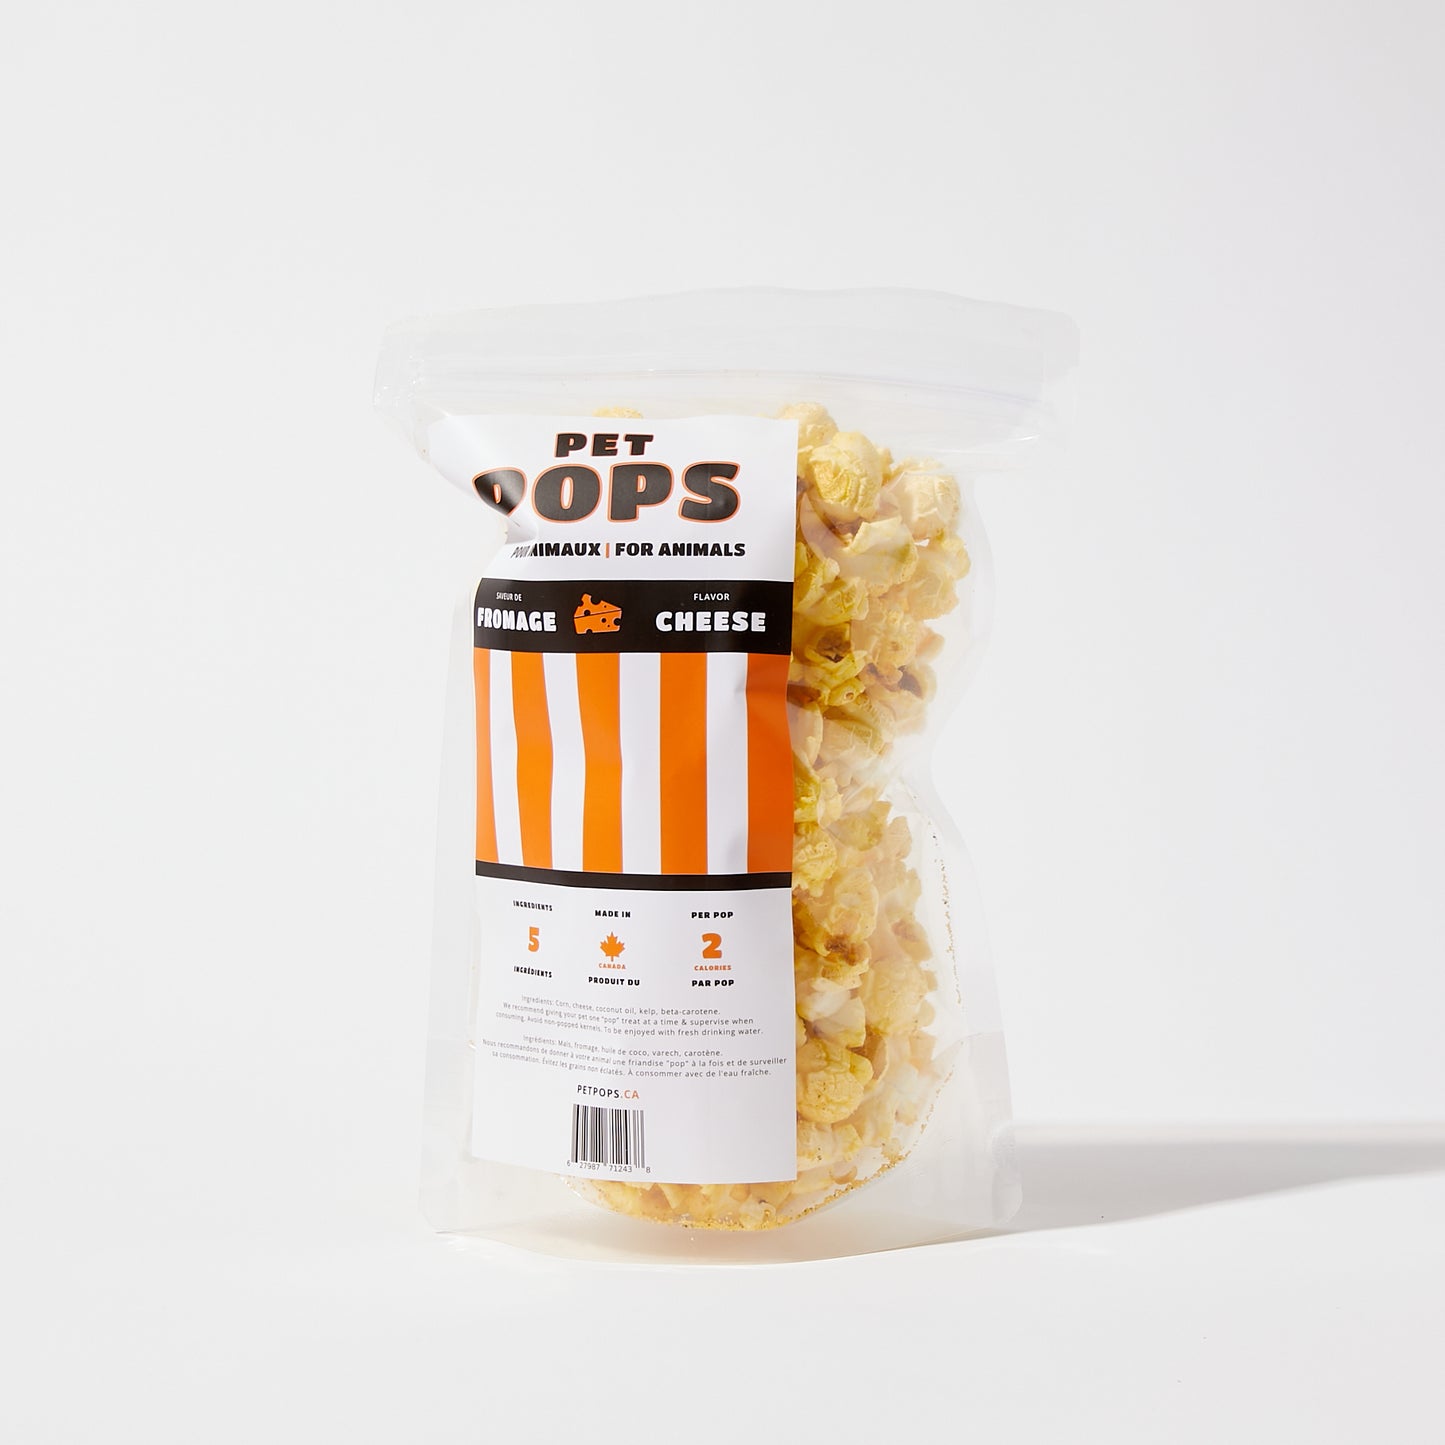 Cheddar popcorn